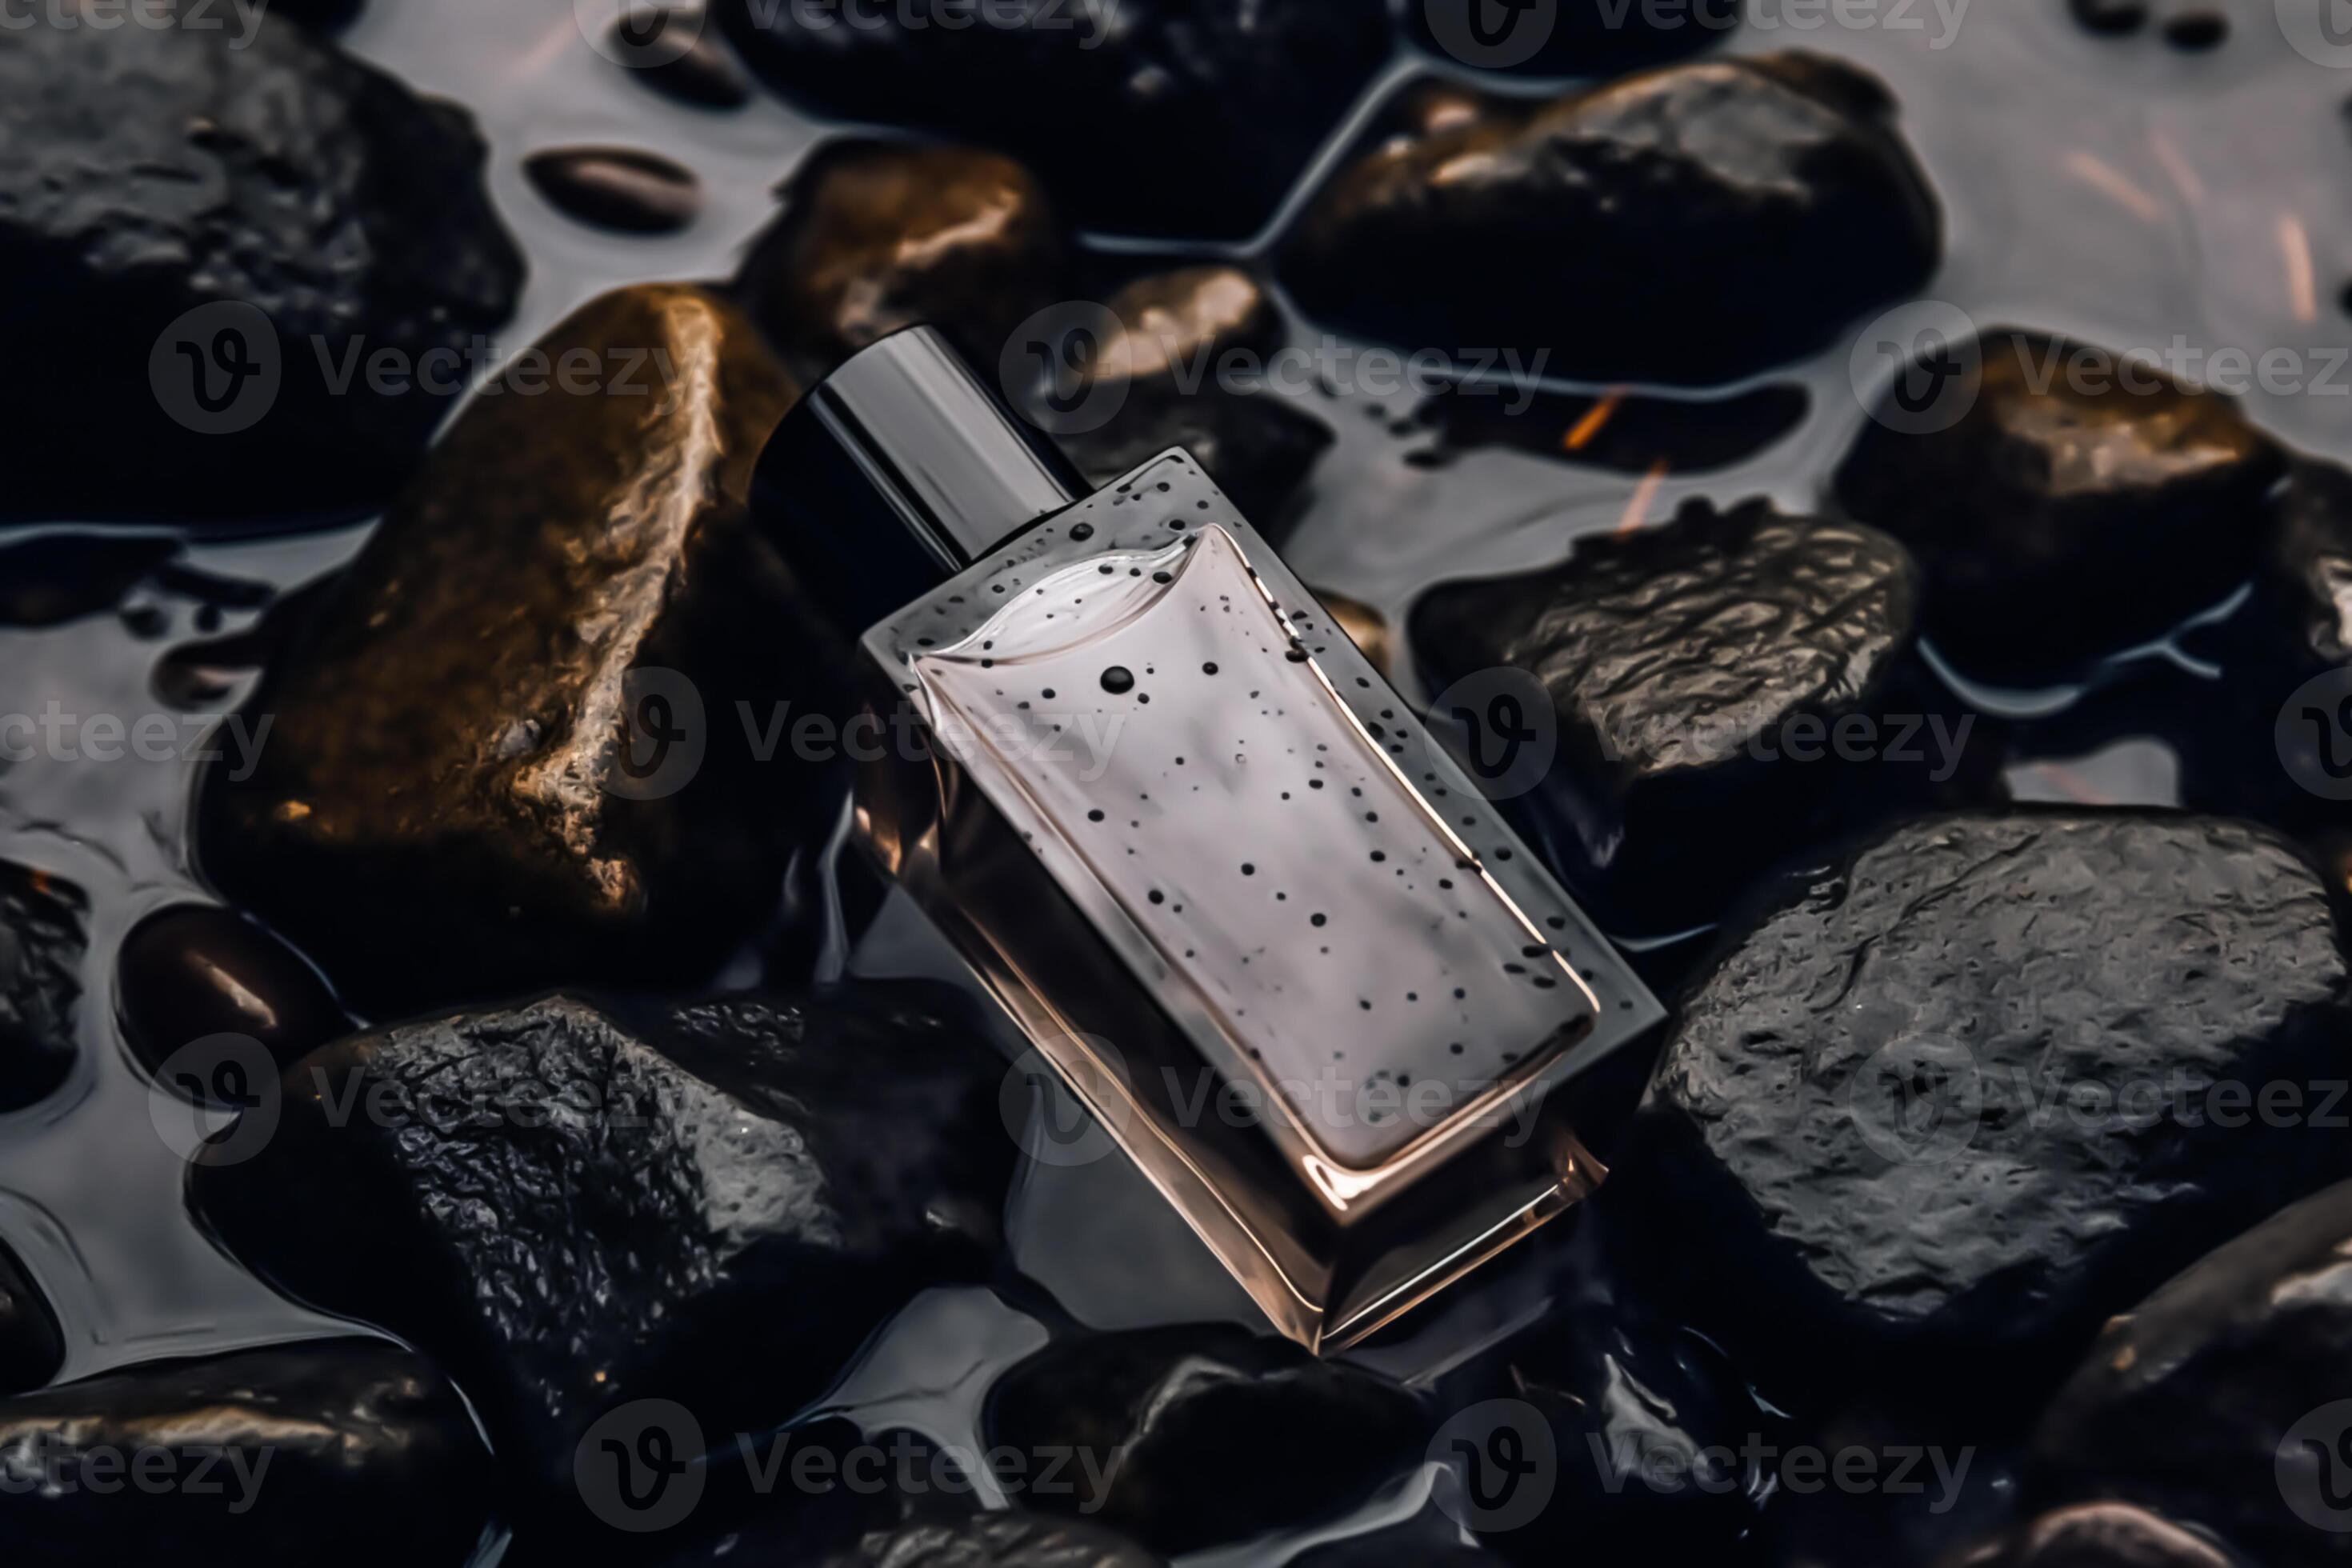 Modern glass men perfume bottle among black rocks in the rain